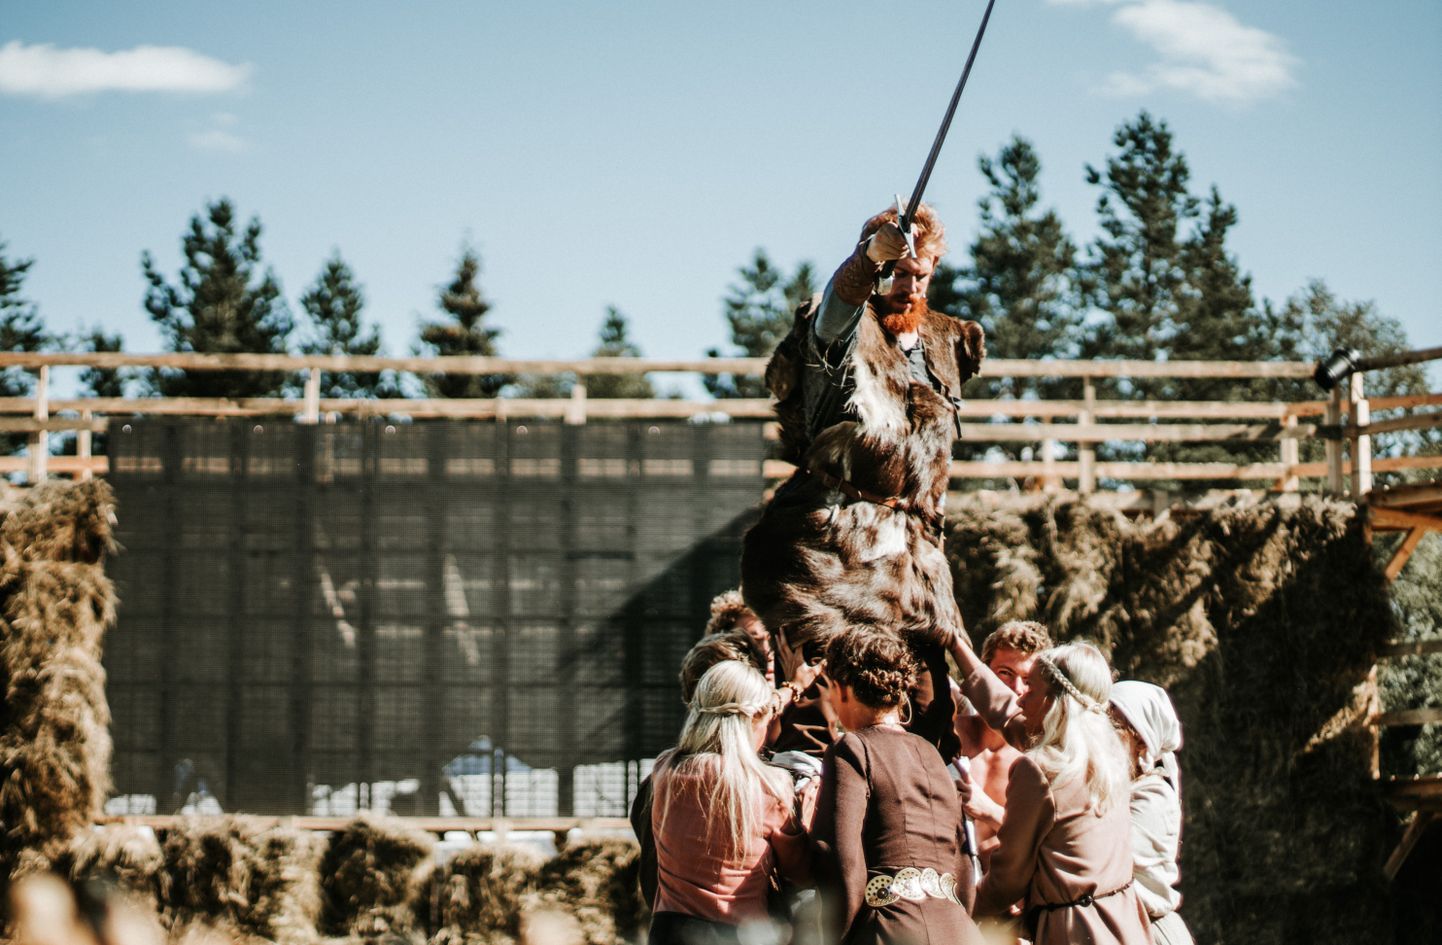 Lõhavere linnamäel etendus augustis Peep Maasiku lavastus «Lembitu-kuningas ilma kuningriigita», peaosas Ott Kartau.